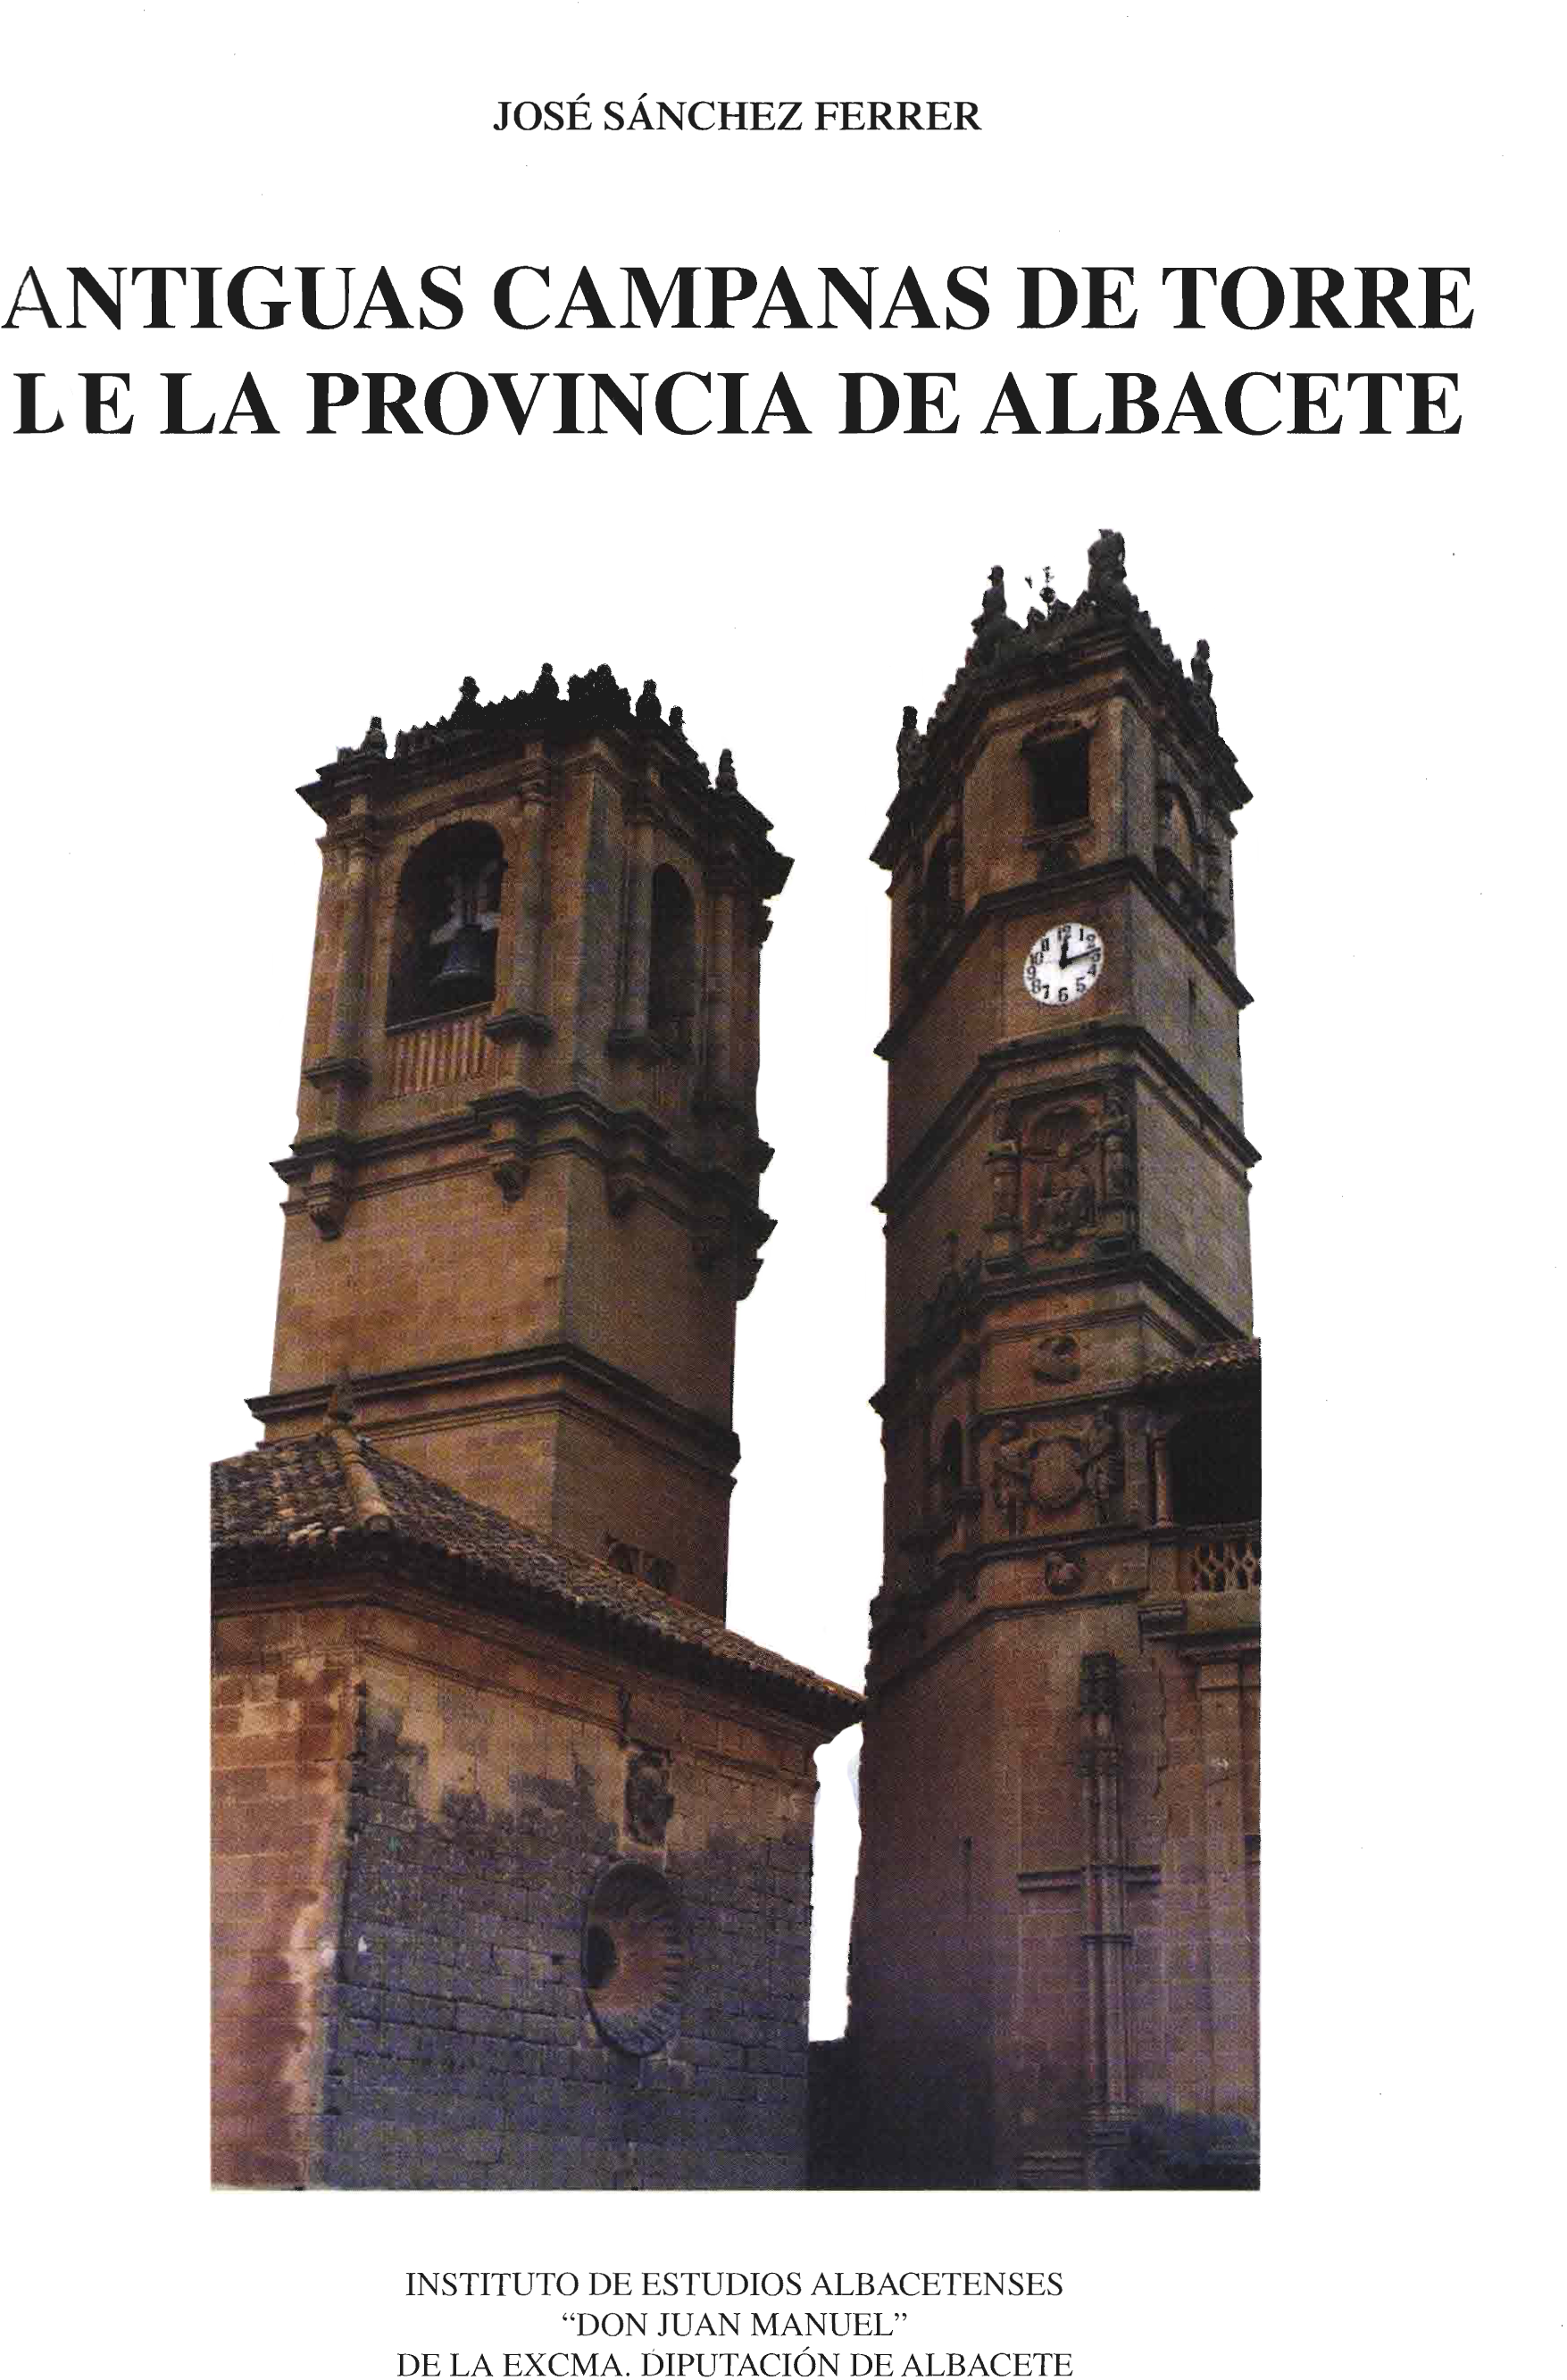 Imagen de portada del libro Antiguas campanas de torre de la provincia de Albacete